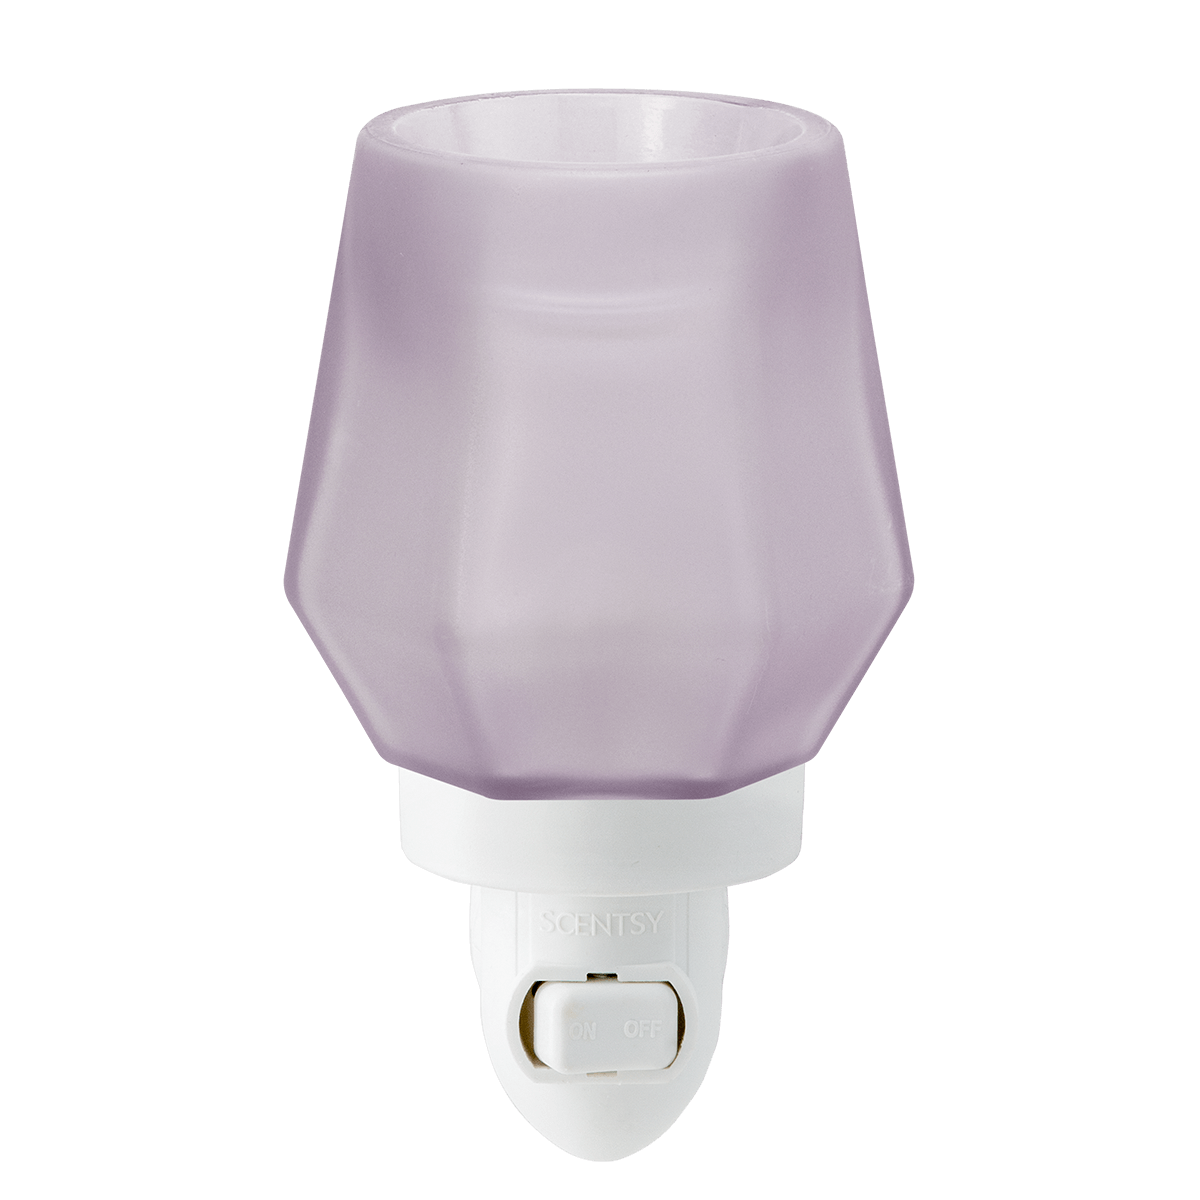 Pretty in Purple Scentsy Plug in Warmer